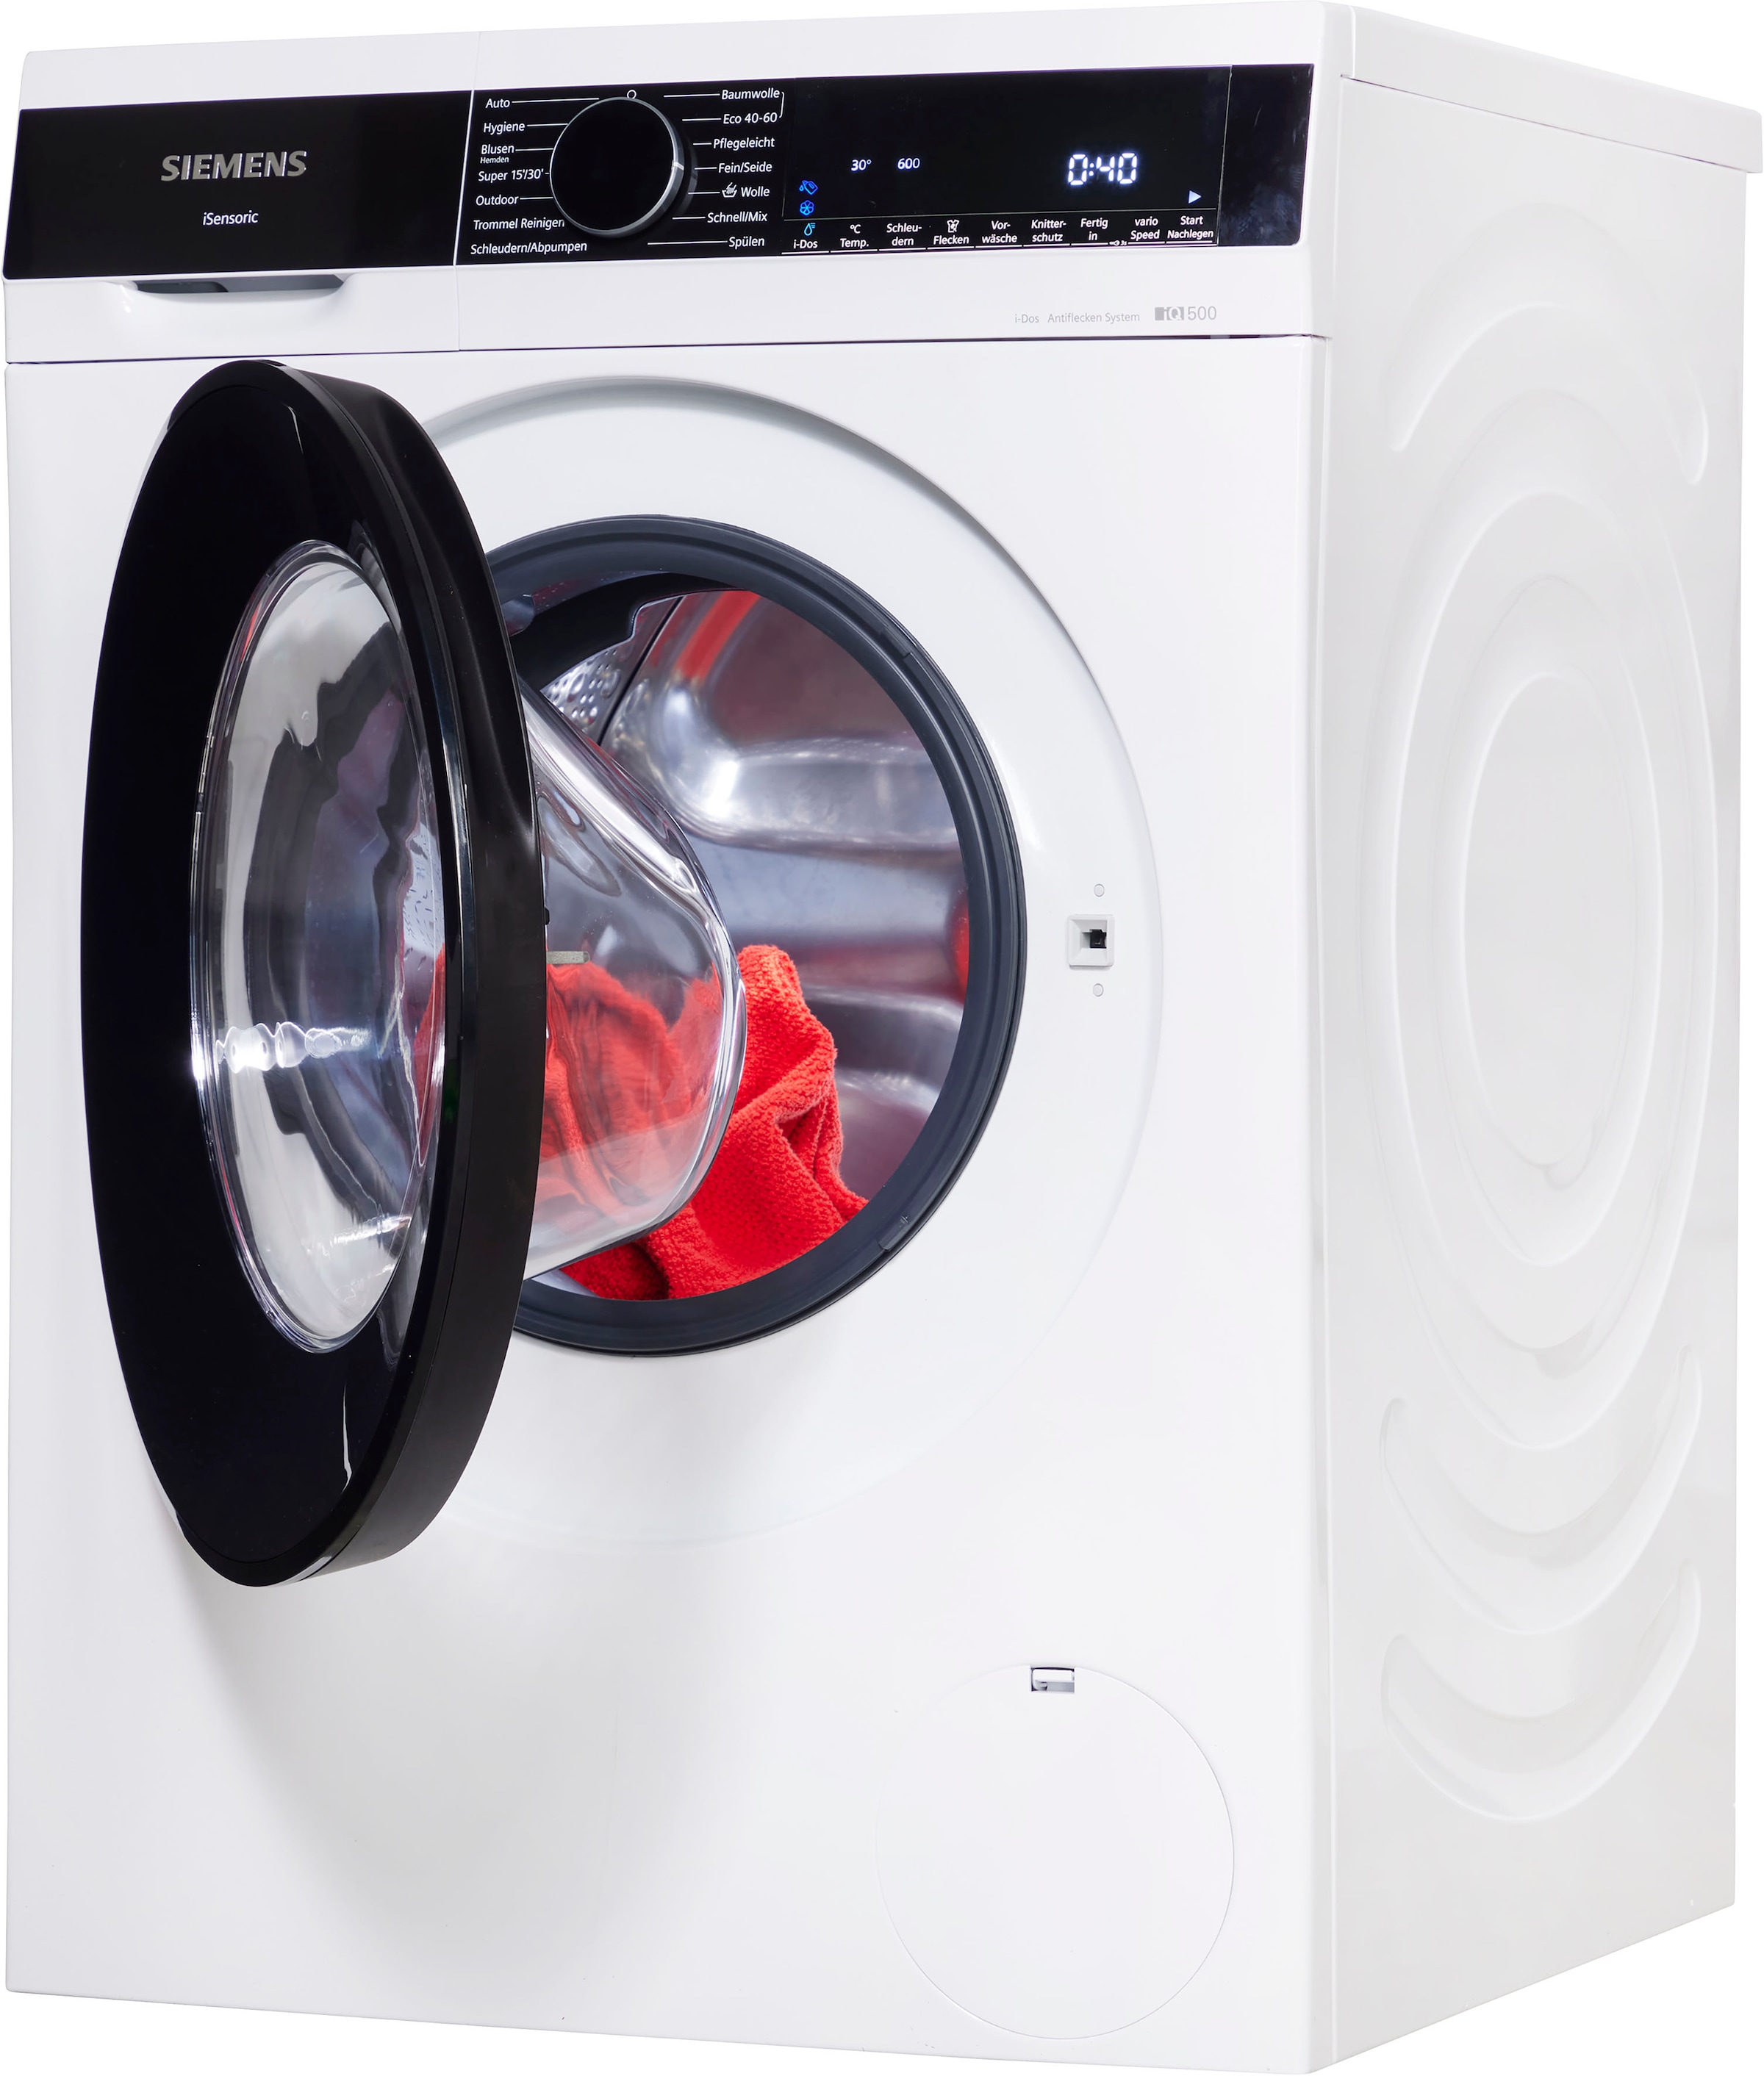 SIEMENS Waschmaschine »WG44G2A40«, 1400 Dosierautomatik Garantie WG44G2A40, U/min, kg, mit - 9 i-Dos XXL 3 Jahren